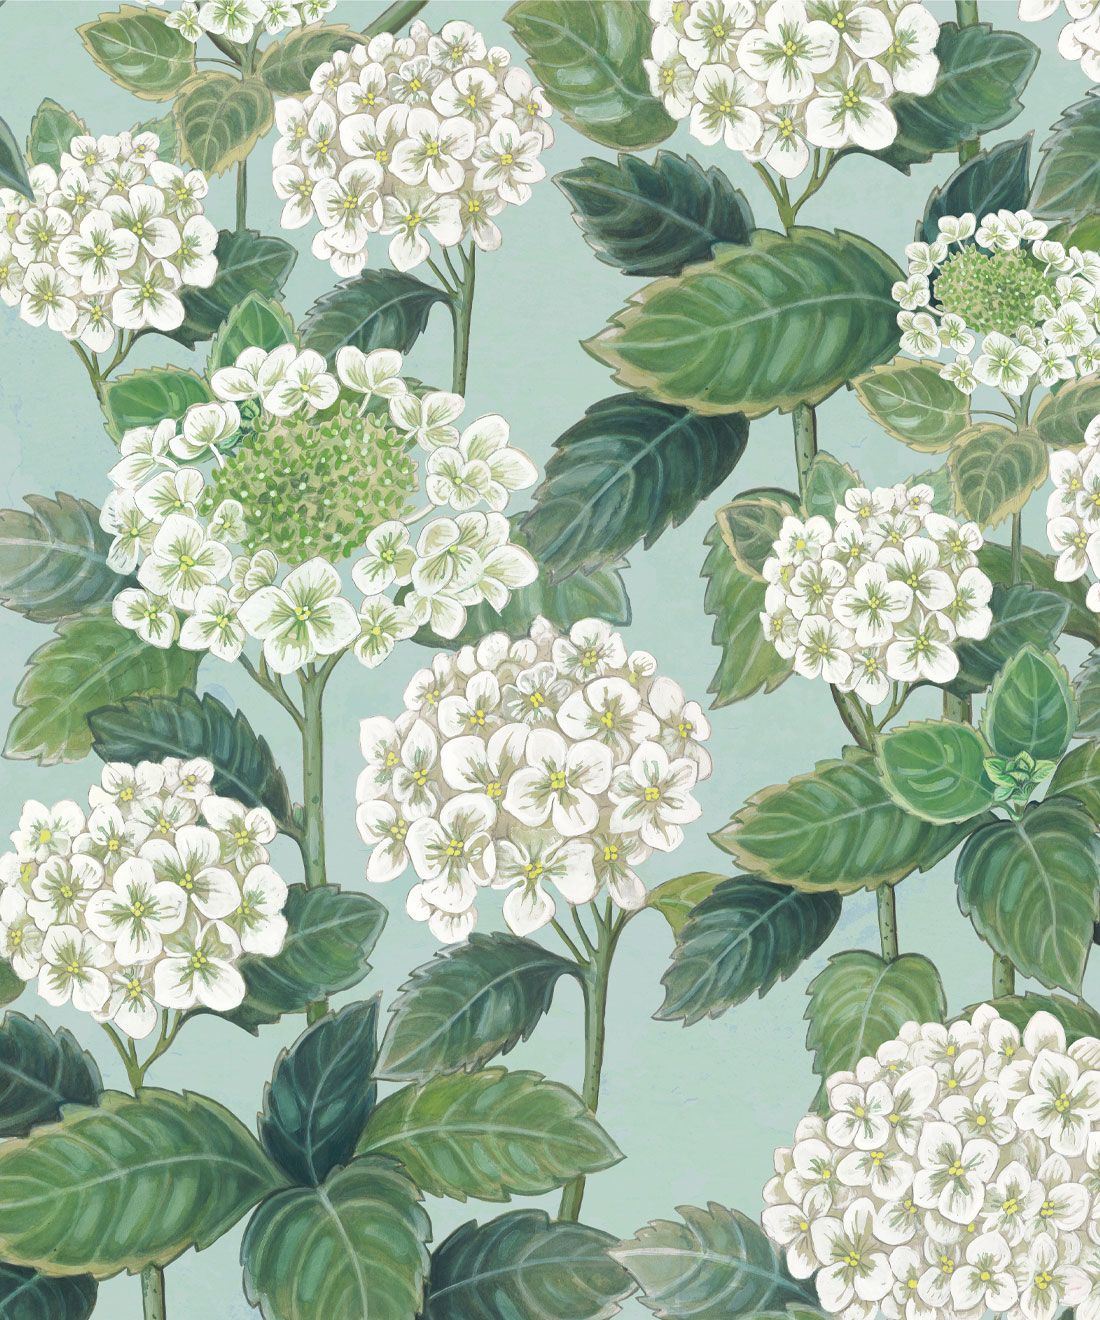 Hydrangea Garden Wallpaper • Blue & White • Swatch